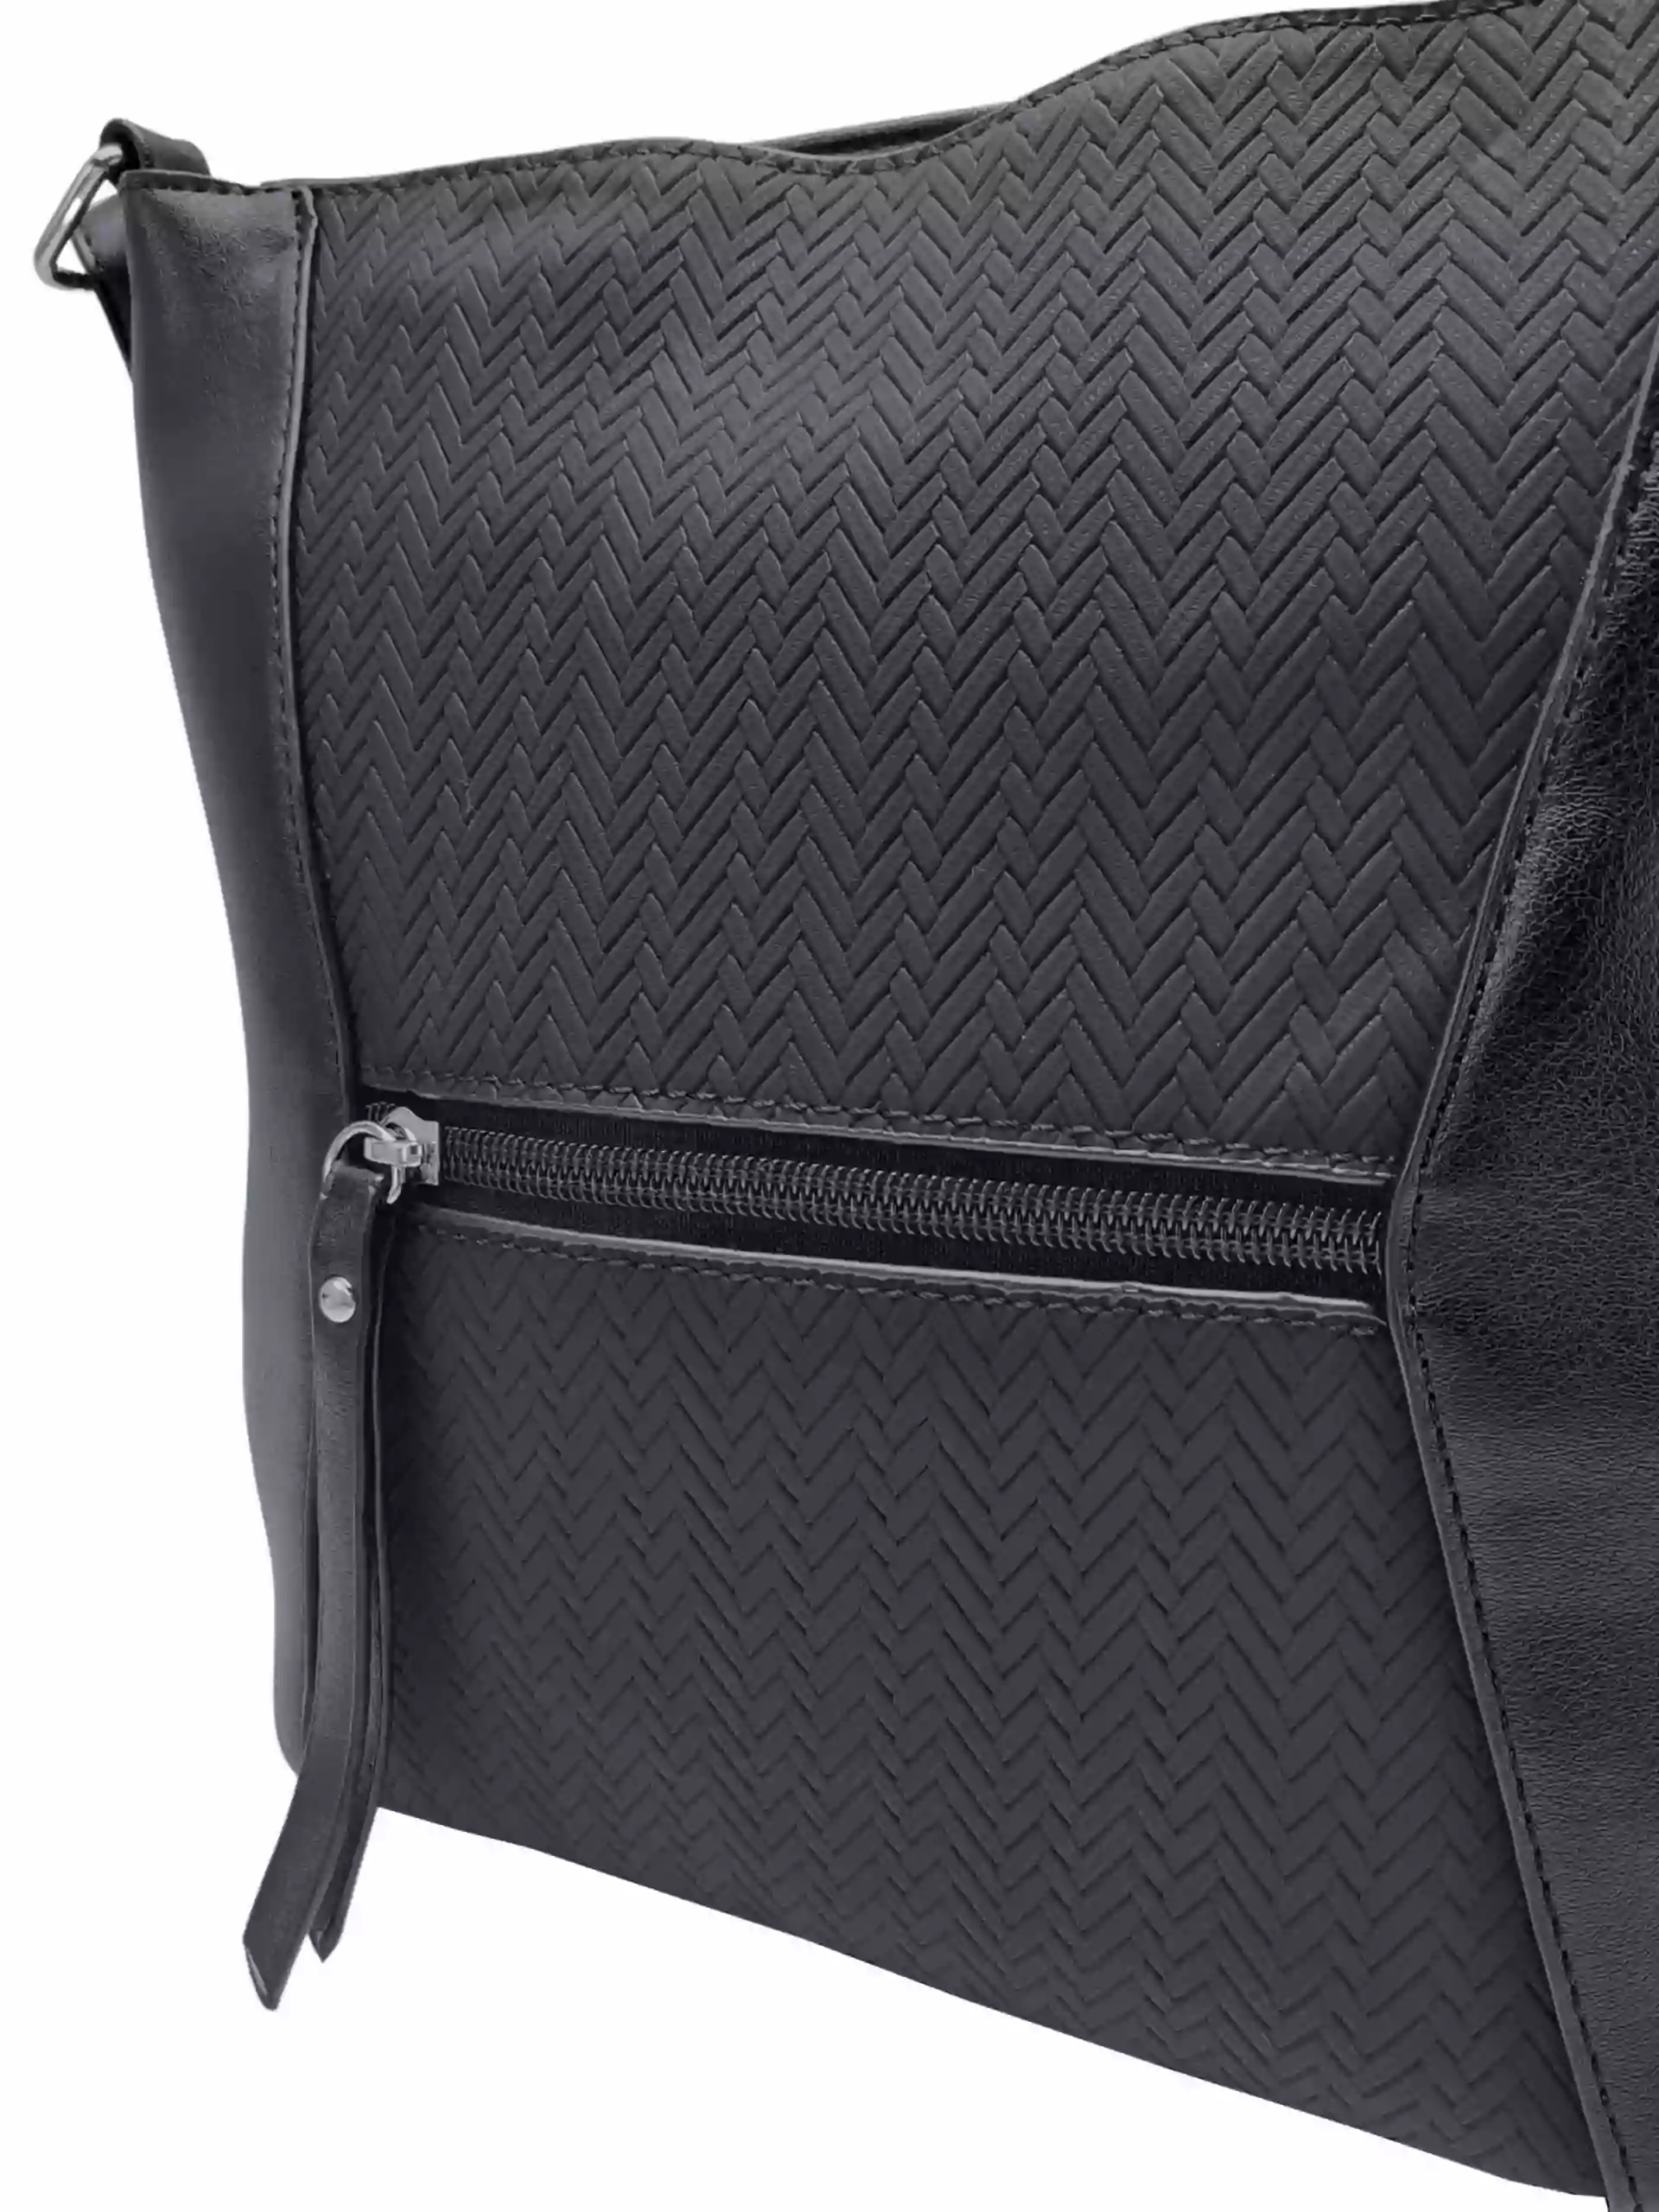 Stylová černá crossbody kabelka se slušivým vzorem, Rosy Bag, NH8139, detail crossbody kabelky